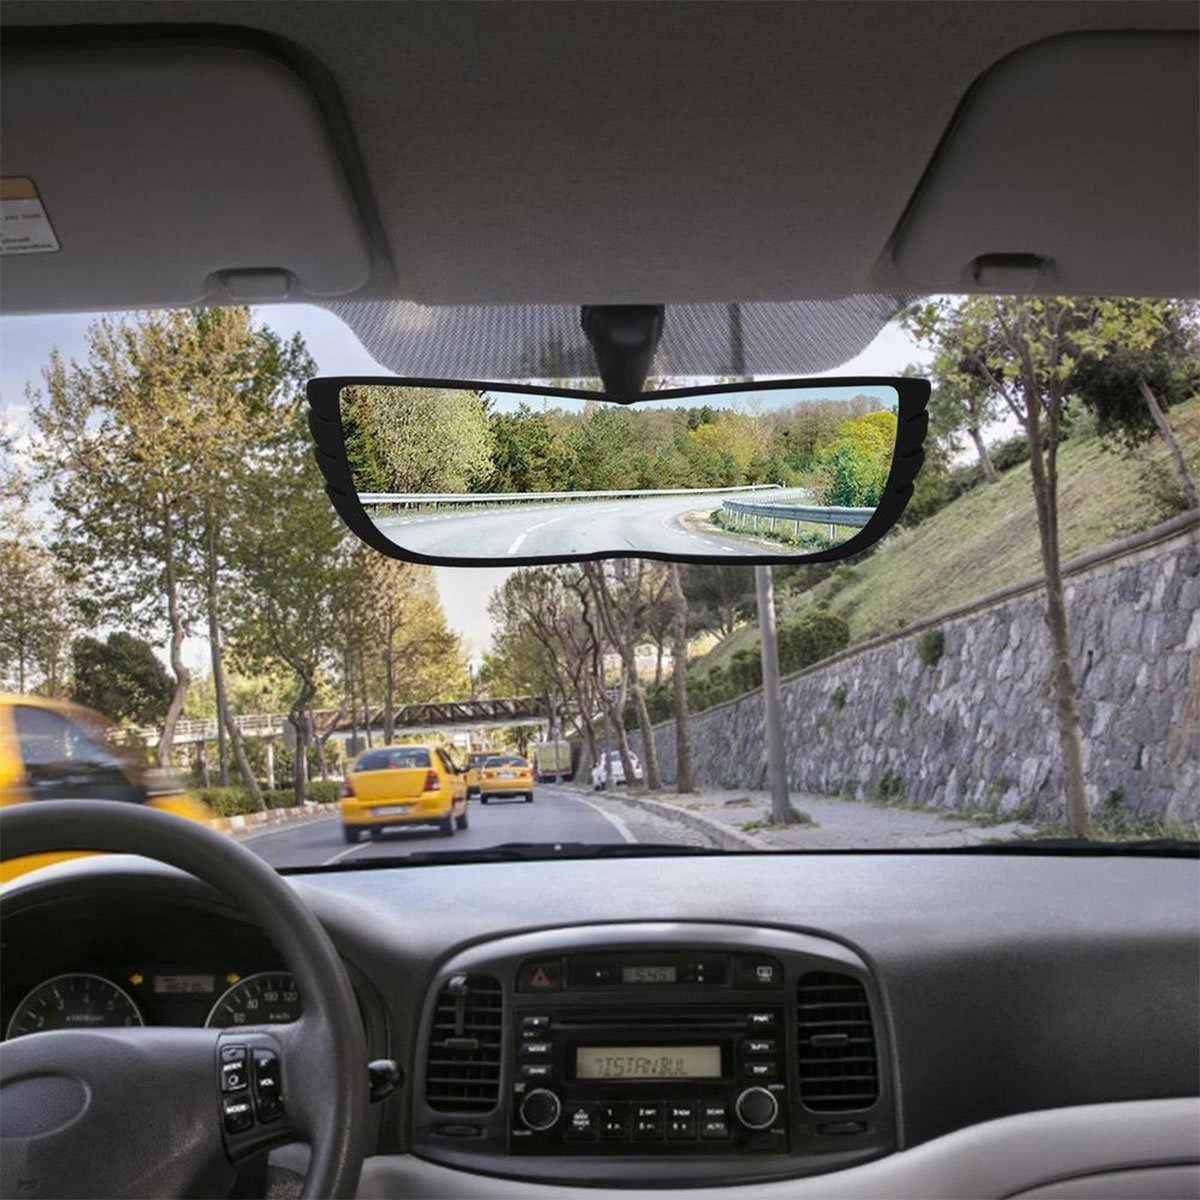 Espelho Retrovisor 160 Graus Visao Ampla Automotivo Carro Caminhao Estrada Visibilidade Segurança Ab - 8